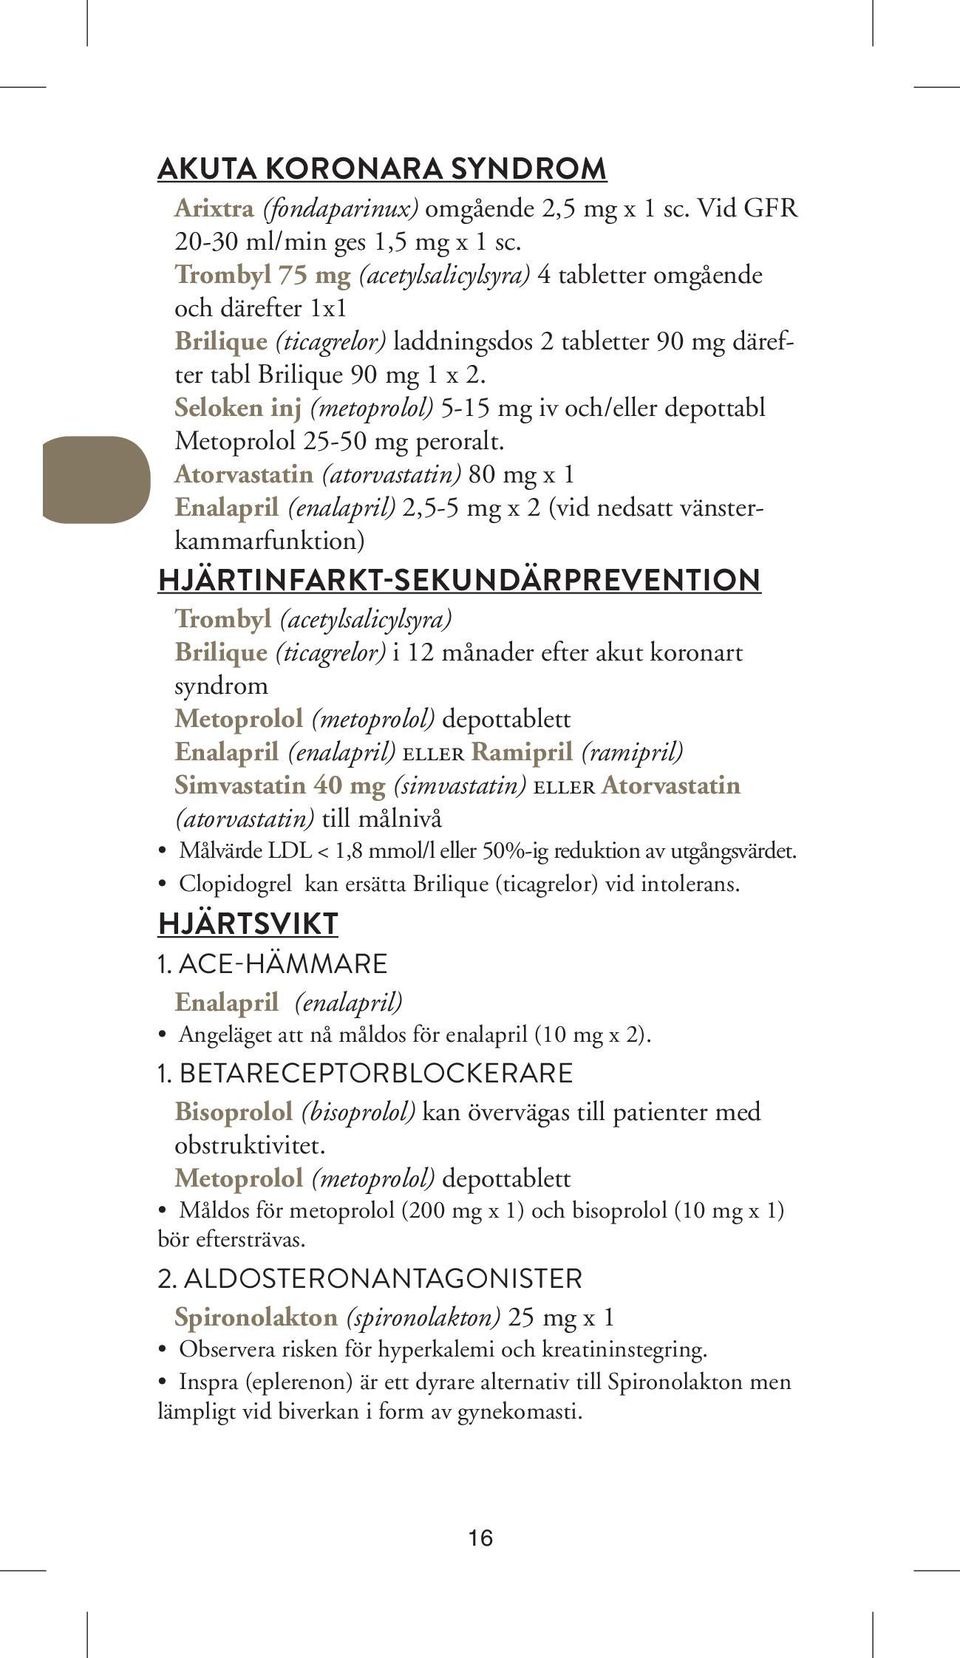 Seloken inj (metoprolol) 5-15 mg iv och/eller depottabl Metoprolol 25-50 mg peroralt.